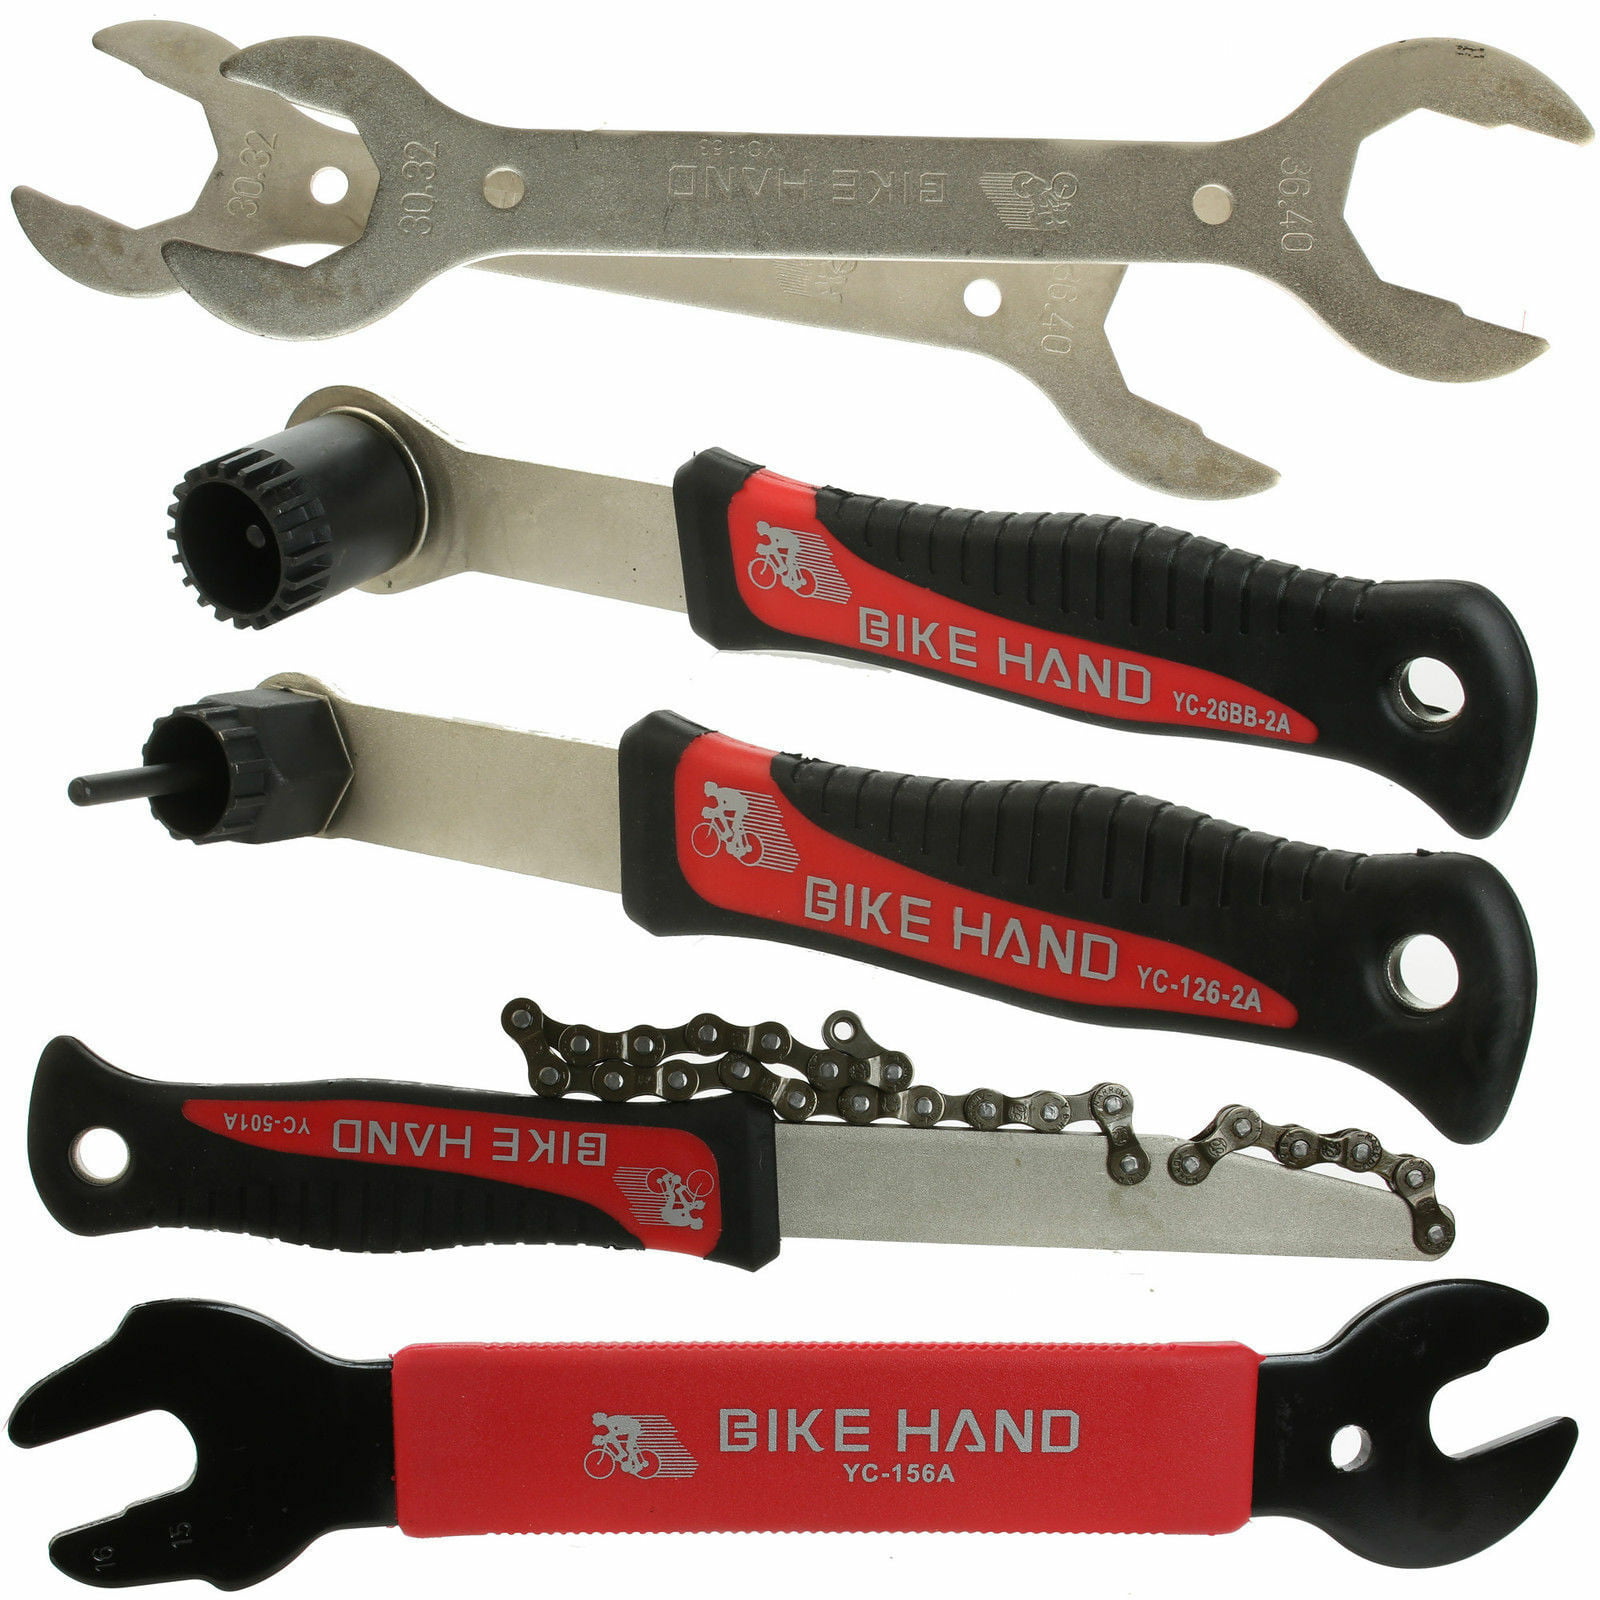 BIKEHAND Bike Bicycle Repair Tool Kit 